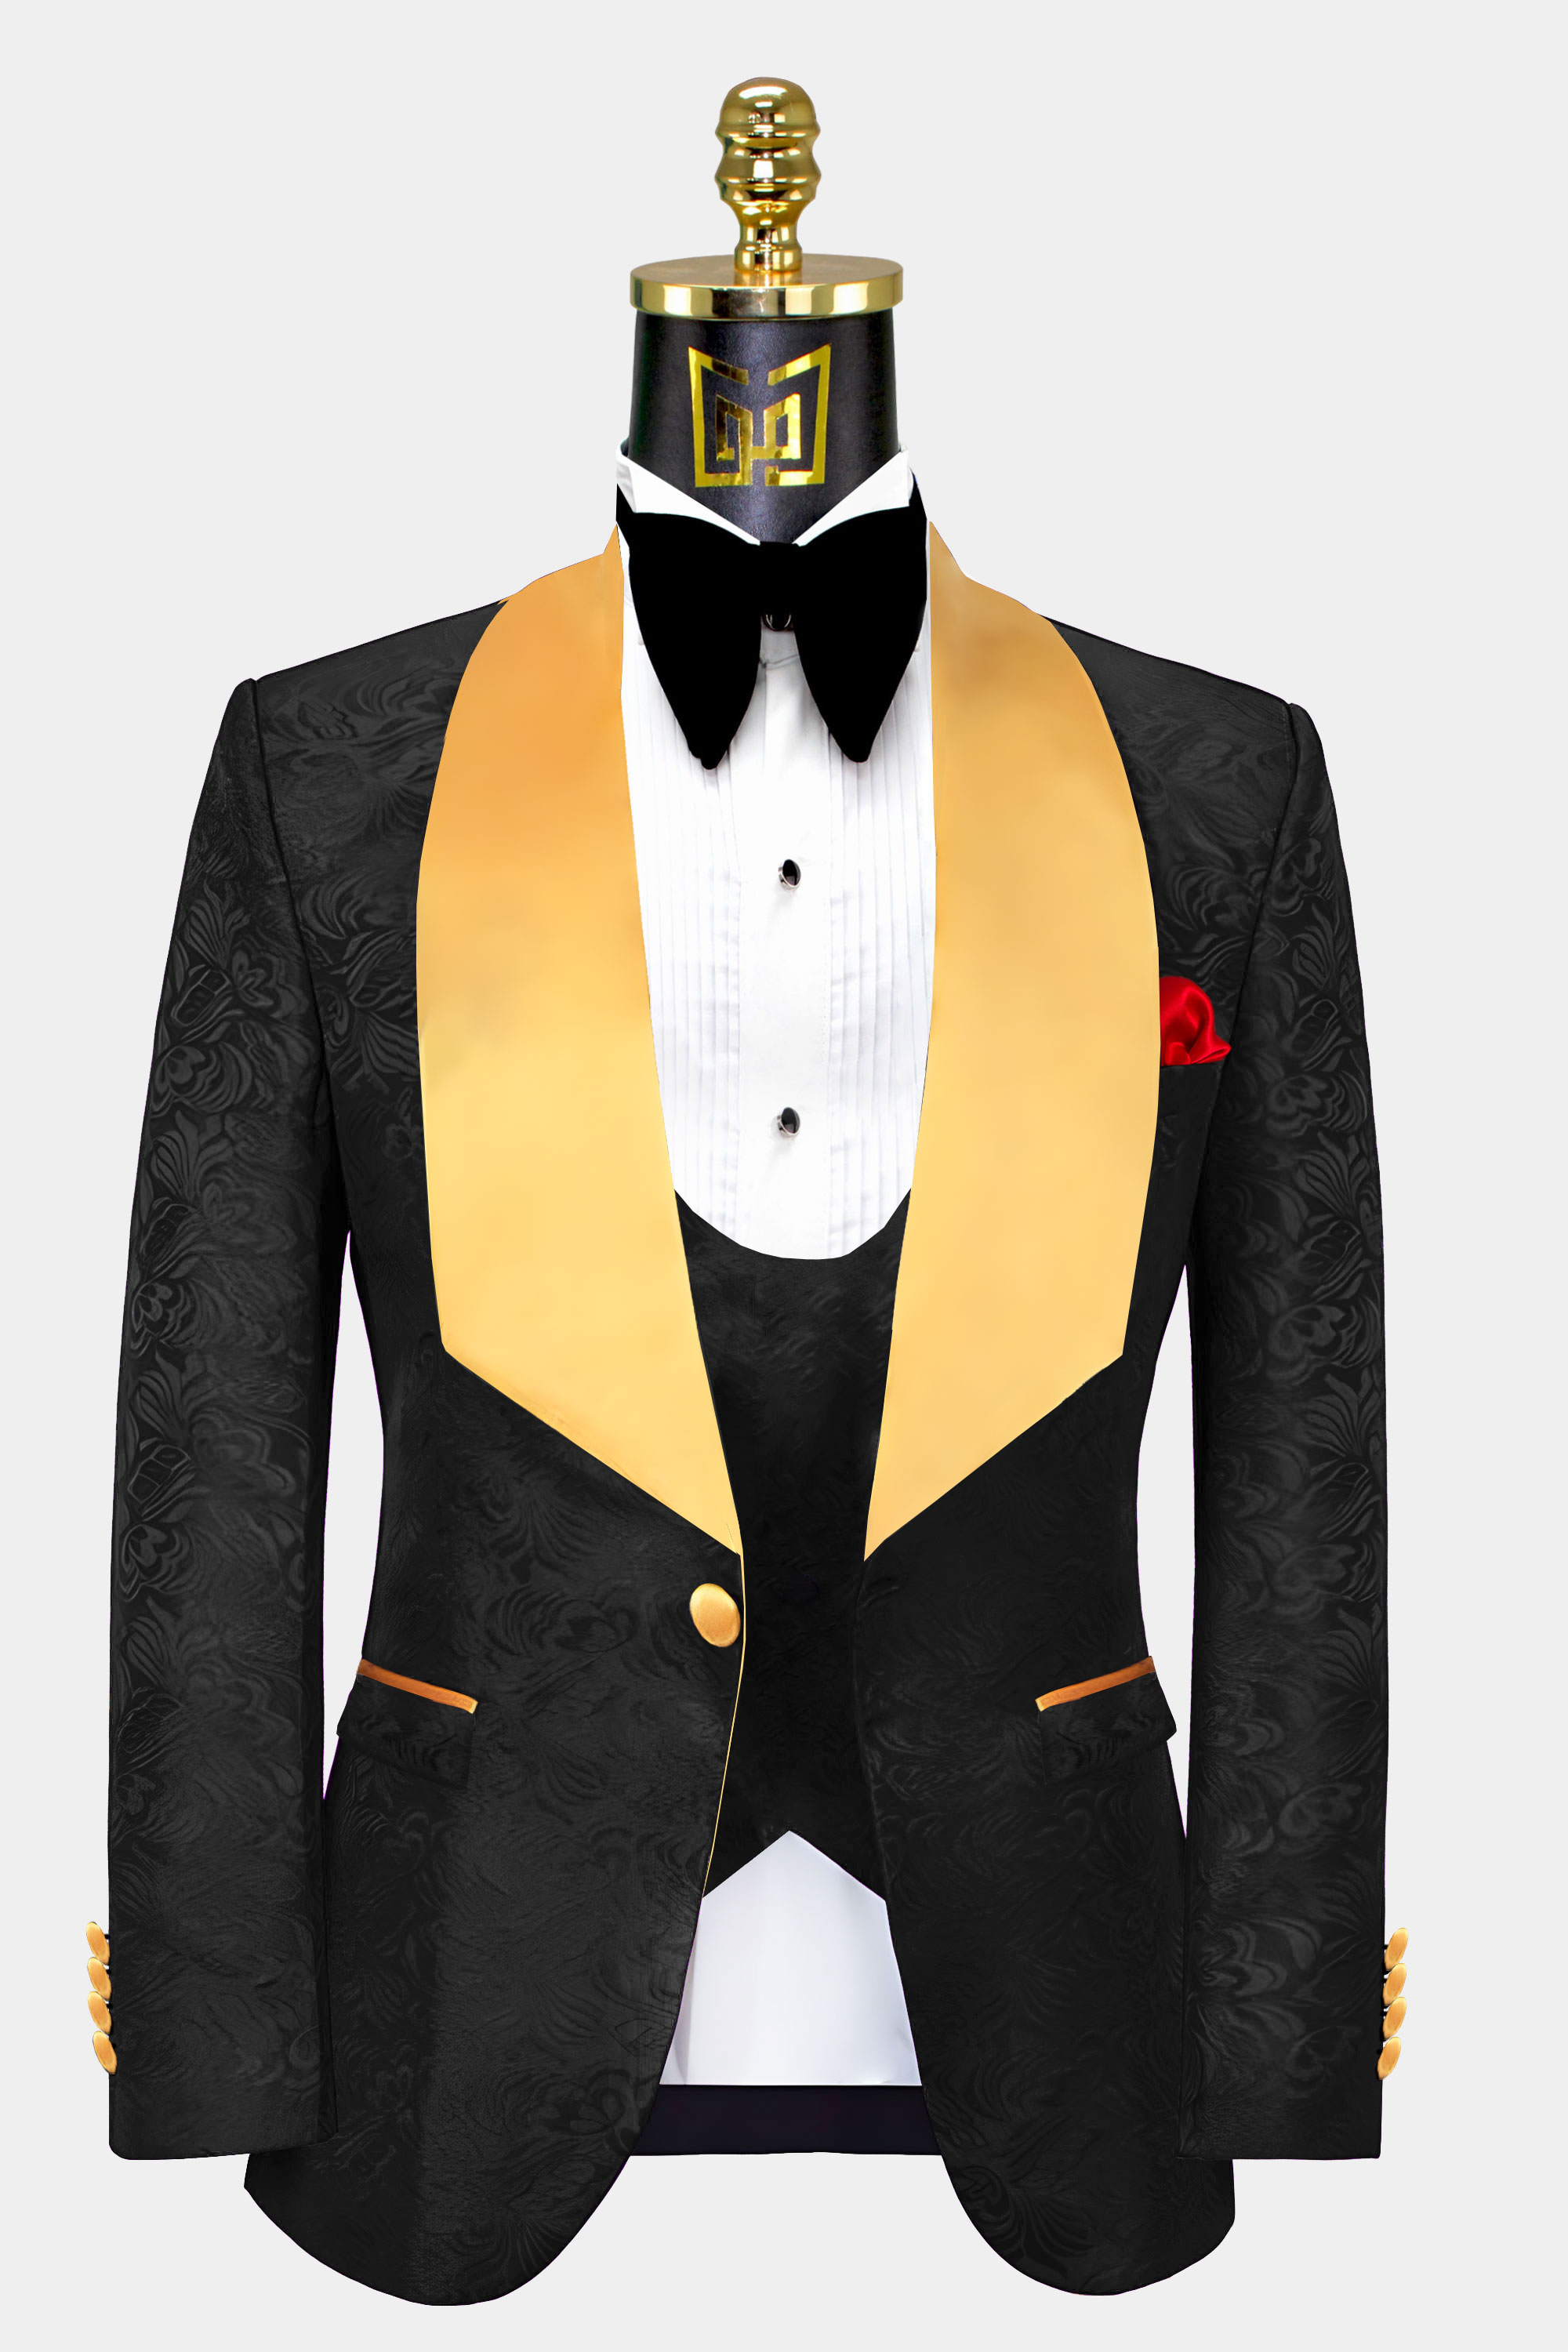 Black-Tuxedo-with-Gold-Lapel-Trim-Groom-Wedding-Suit-For-Men-from-Gentlemansguru.com